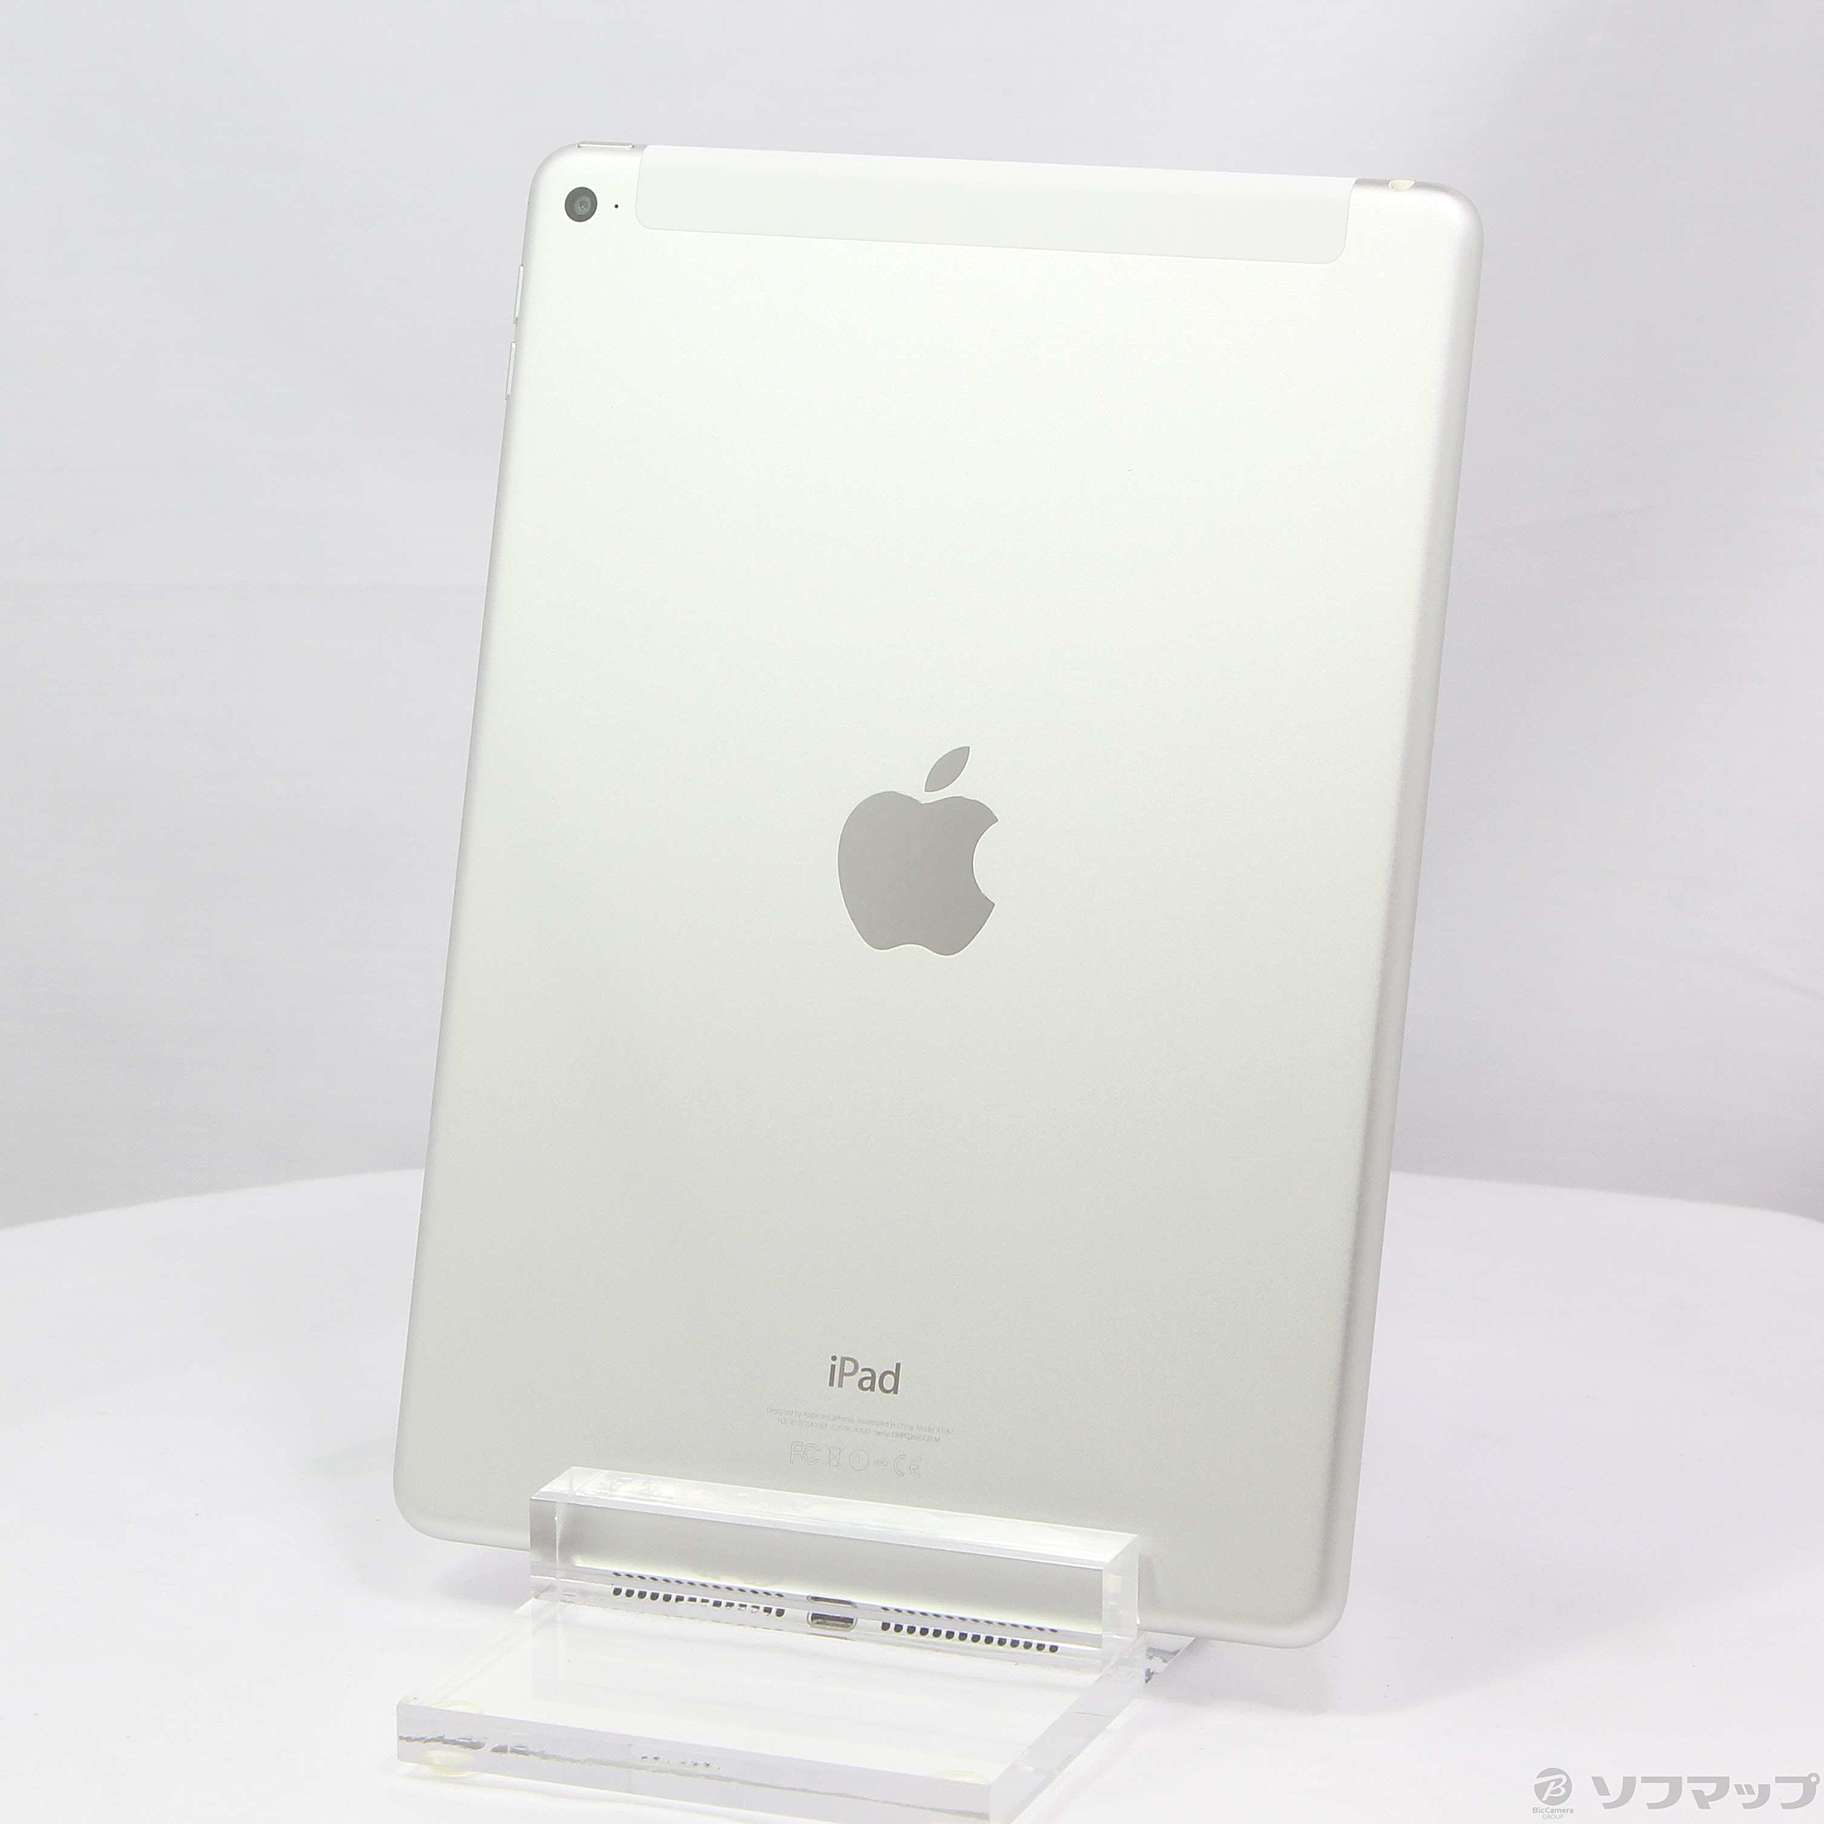 中古品无iPad Air 2 64GB银MGHY2J/A SIM|no邮购是Sofmap[sofmap]